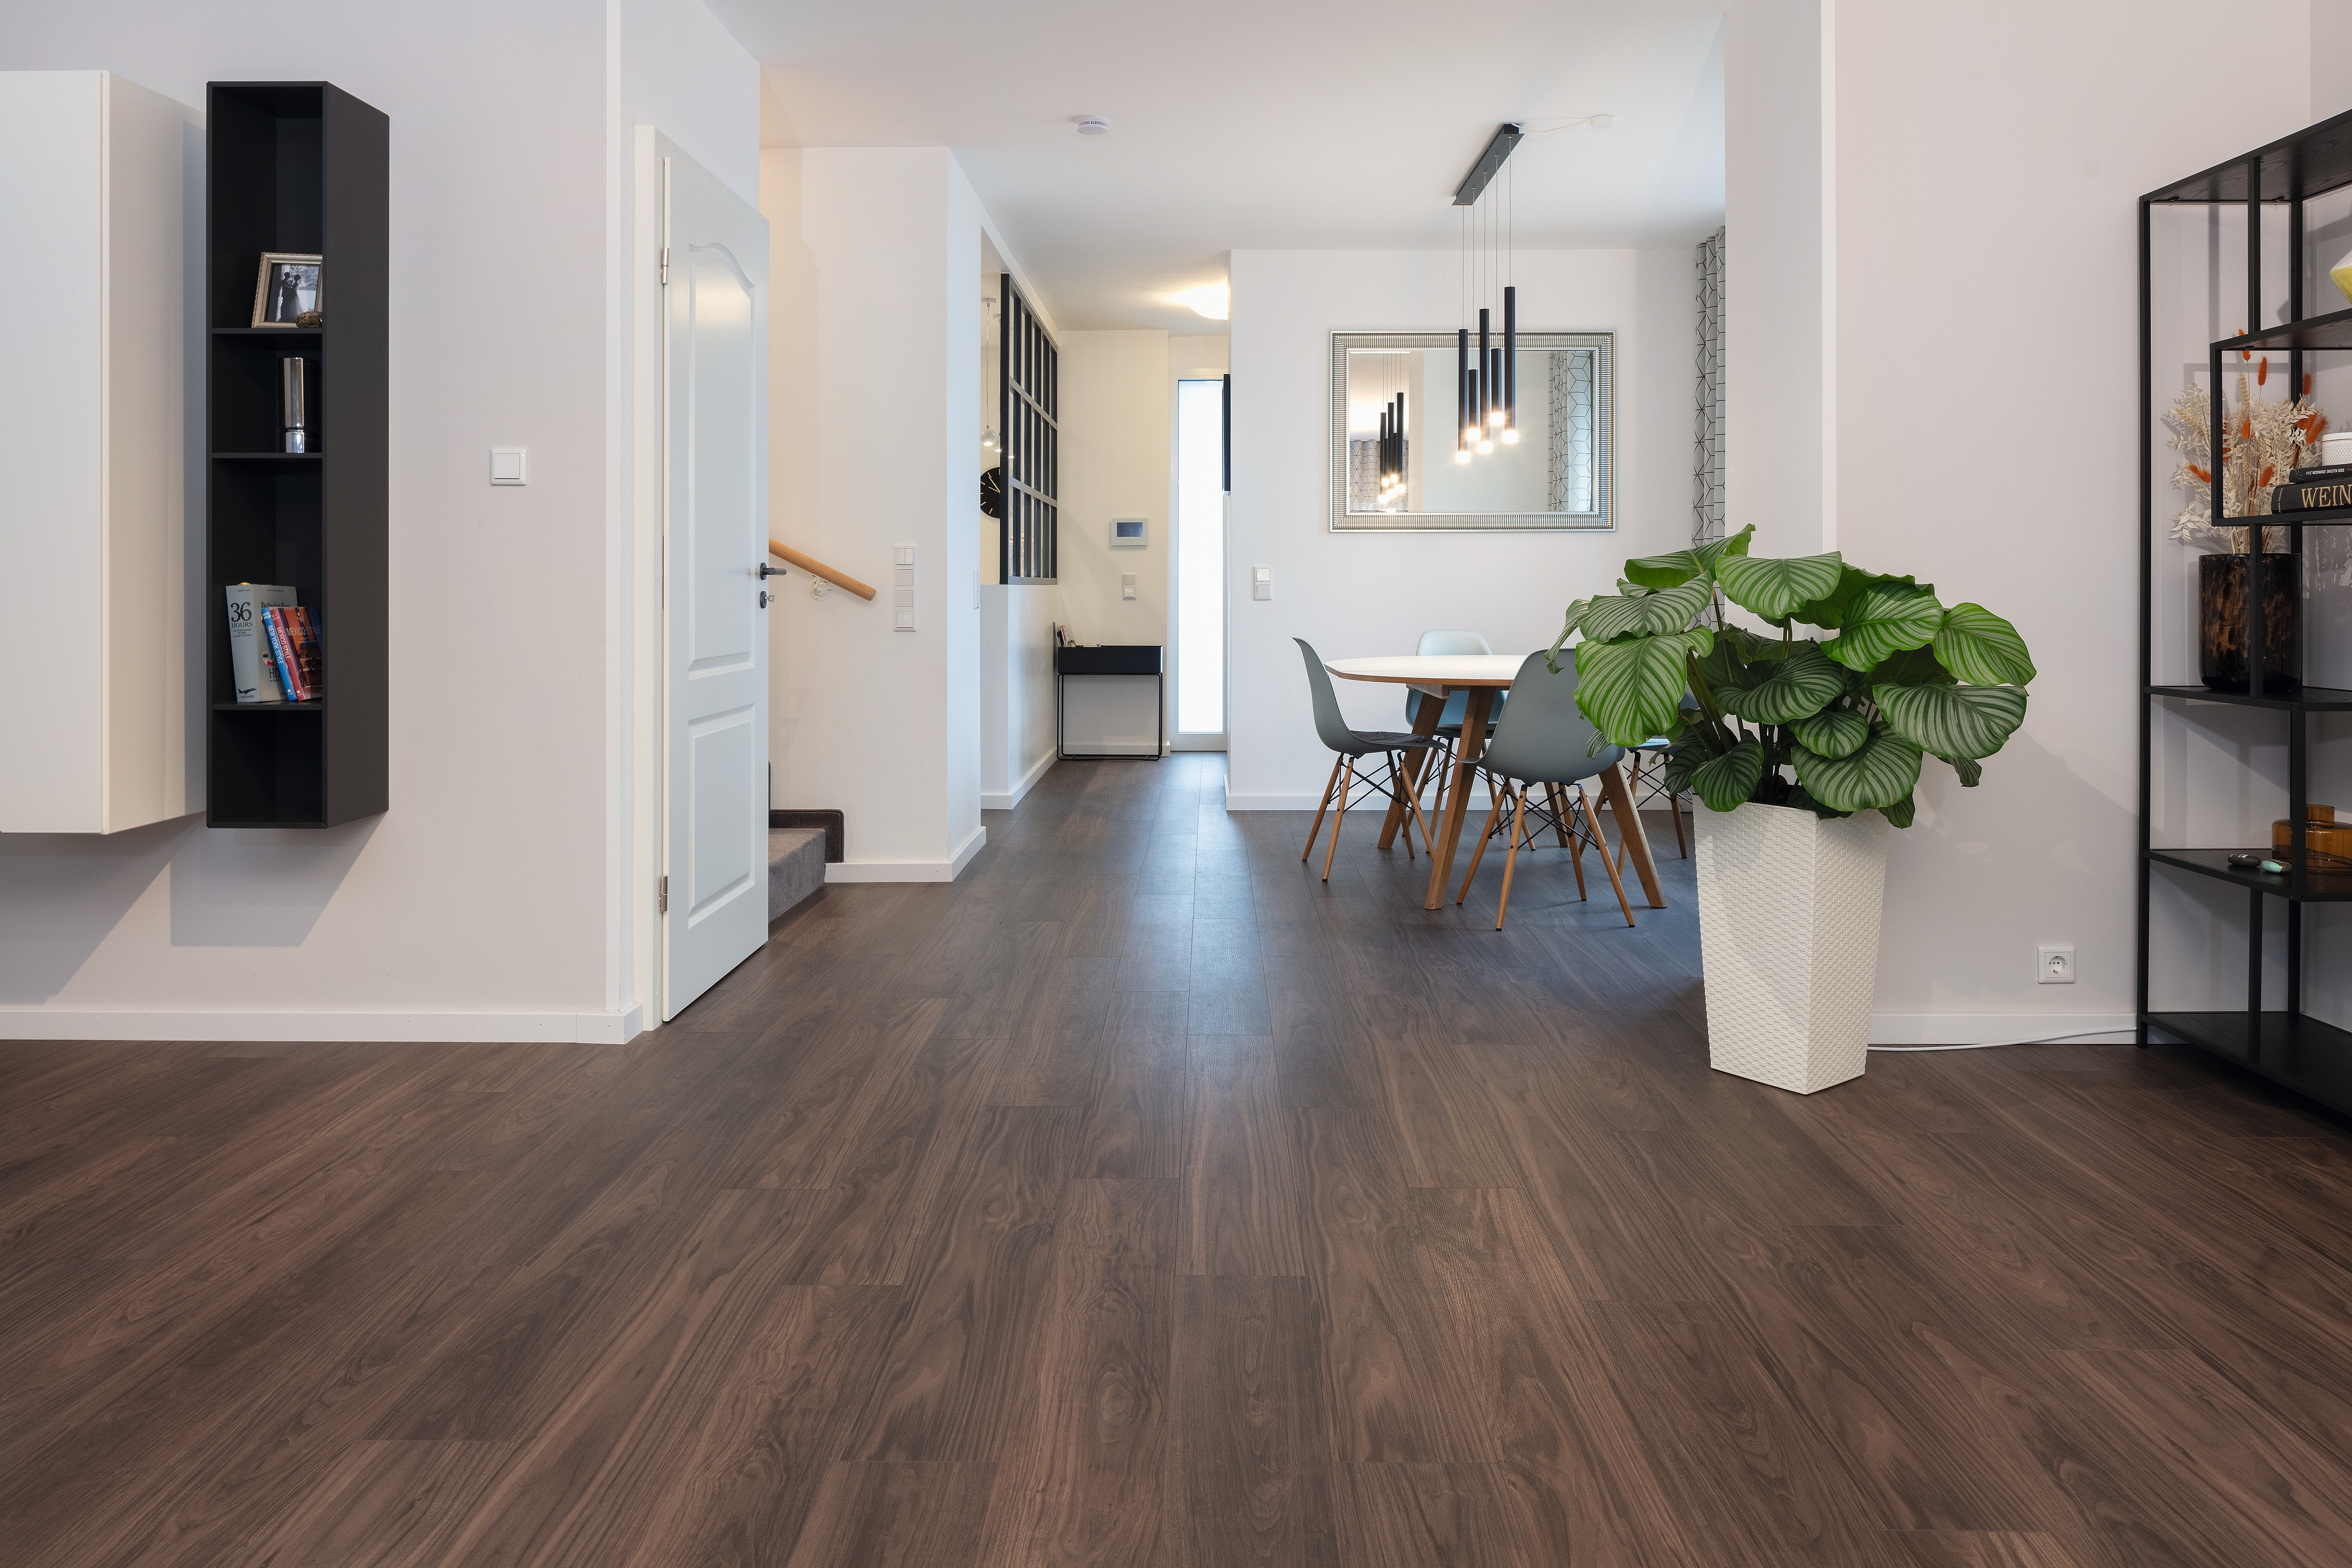 Der EGGER Comfort-Boden vereint die Stärken von Laminat mit den besonderen Kork-Eigenschaften und wurde auf 160 m² im gesamten Wohnhaus verlegt.